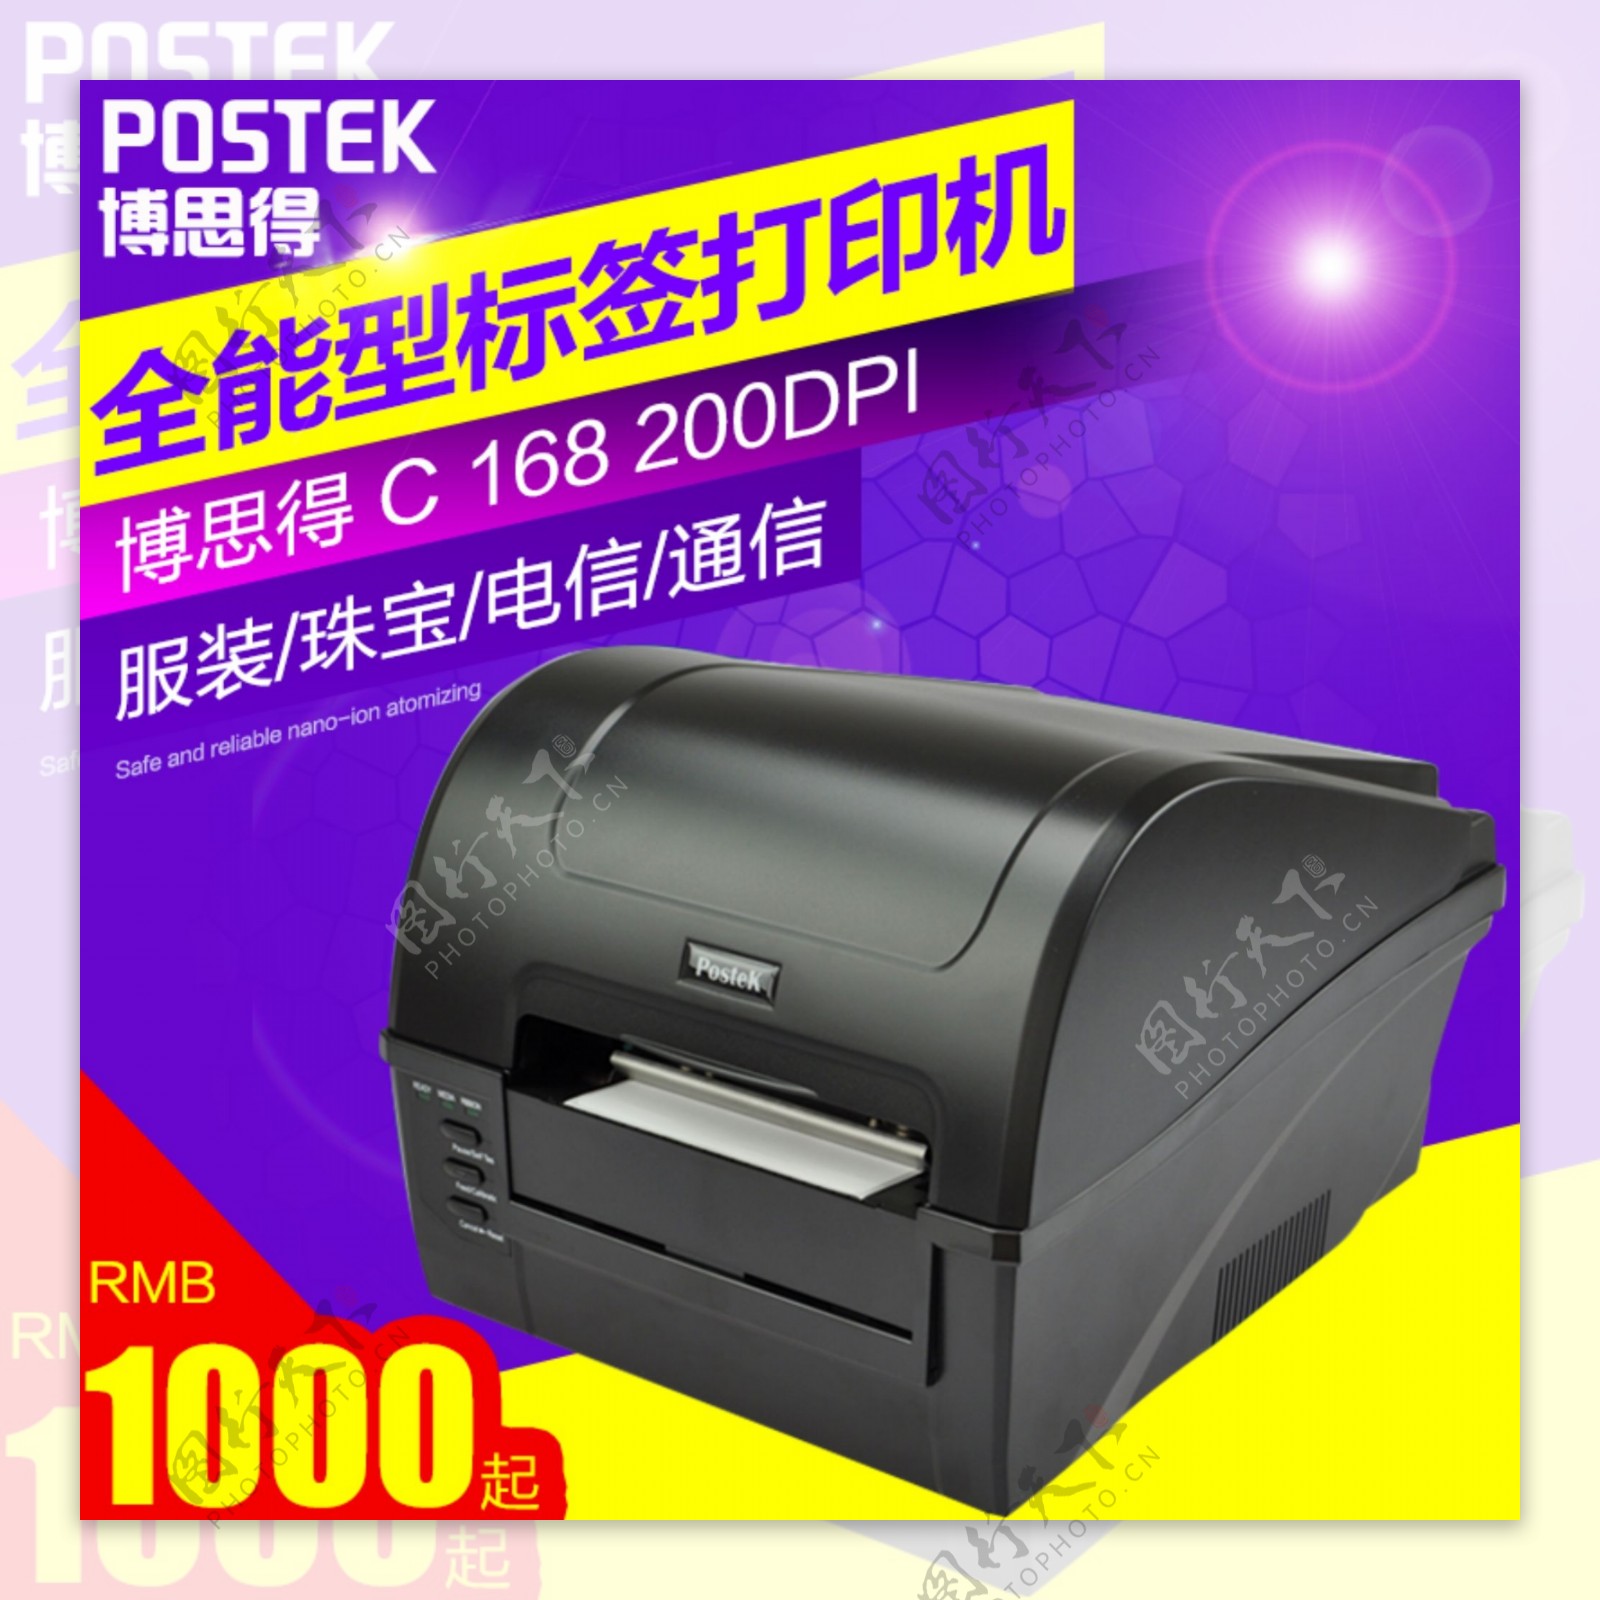 博思得168打印机专业打印